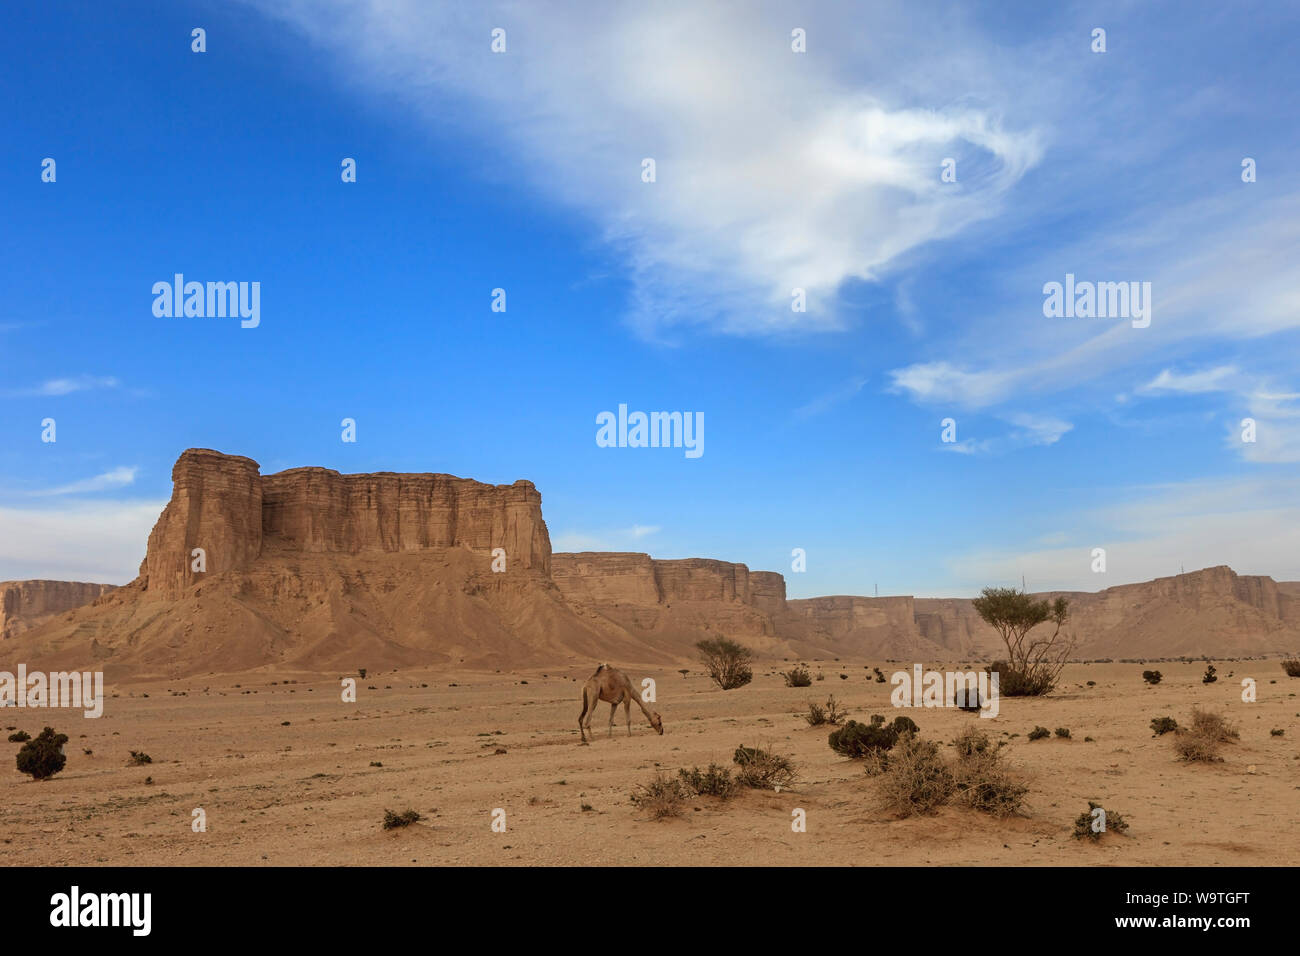 El pastoreo de camellos en el desierto por la montaña Tuwaiq, Arabia Saudita Foto de stock